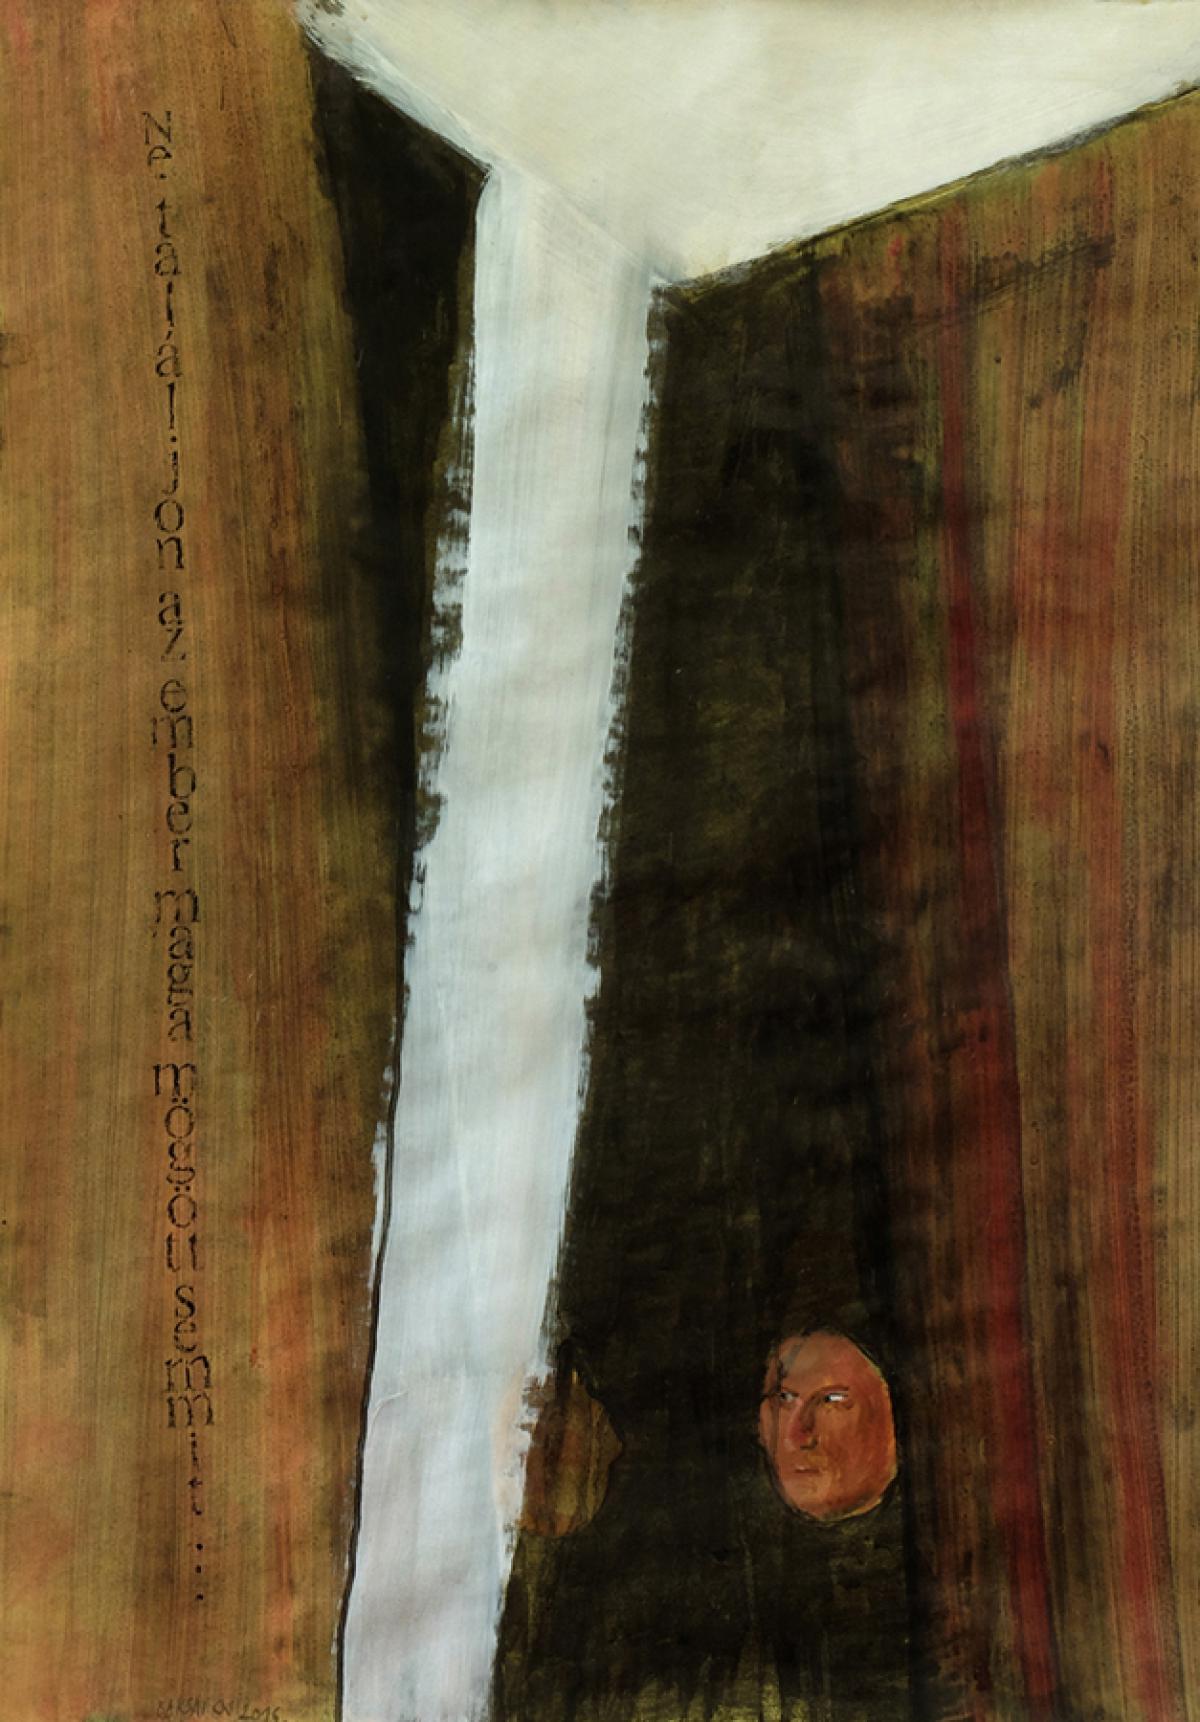 Baksai 2016, Függöny, 100x70cm, tempera, akvarell, papír